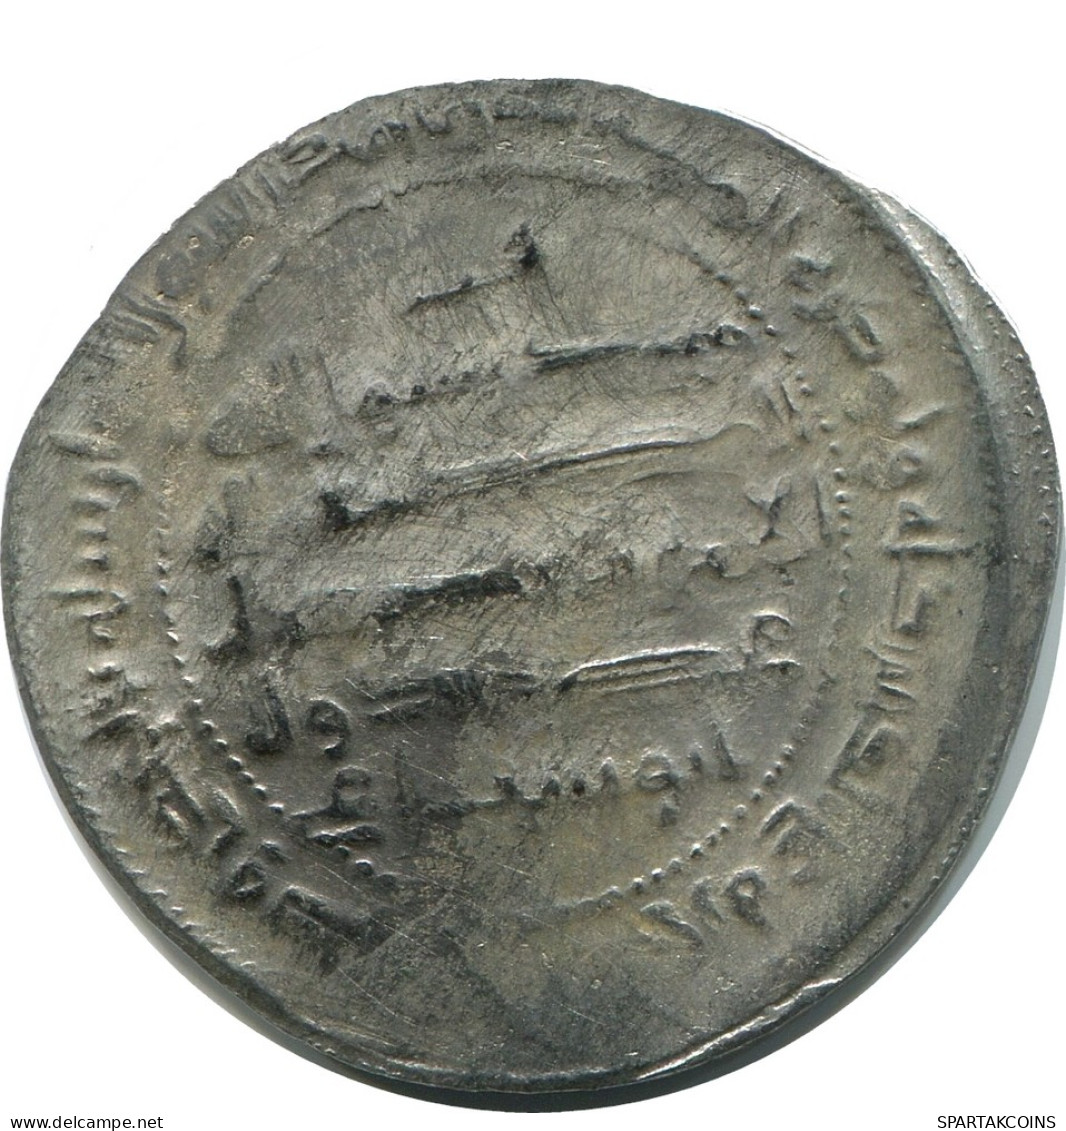 BUYID/ SAMANID BAWAYHID Silver DIRHAM #AH187.45.U - Orientalische Münzen